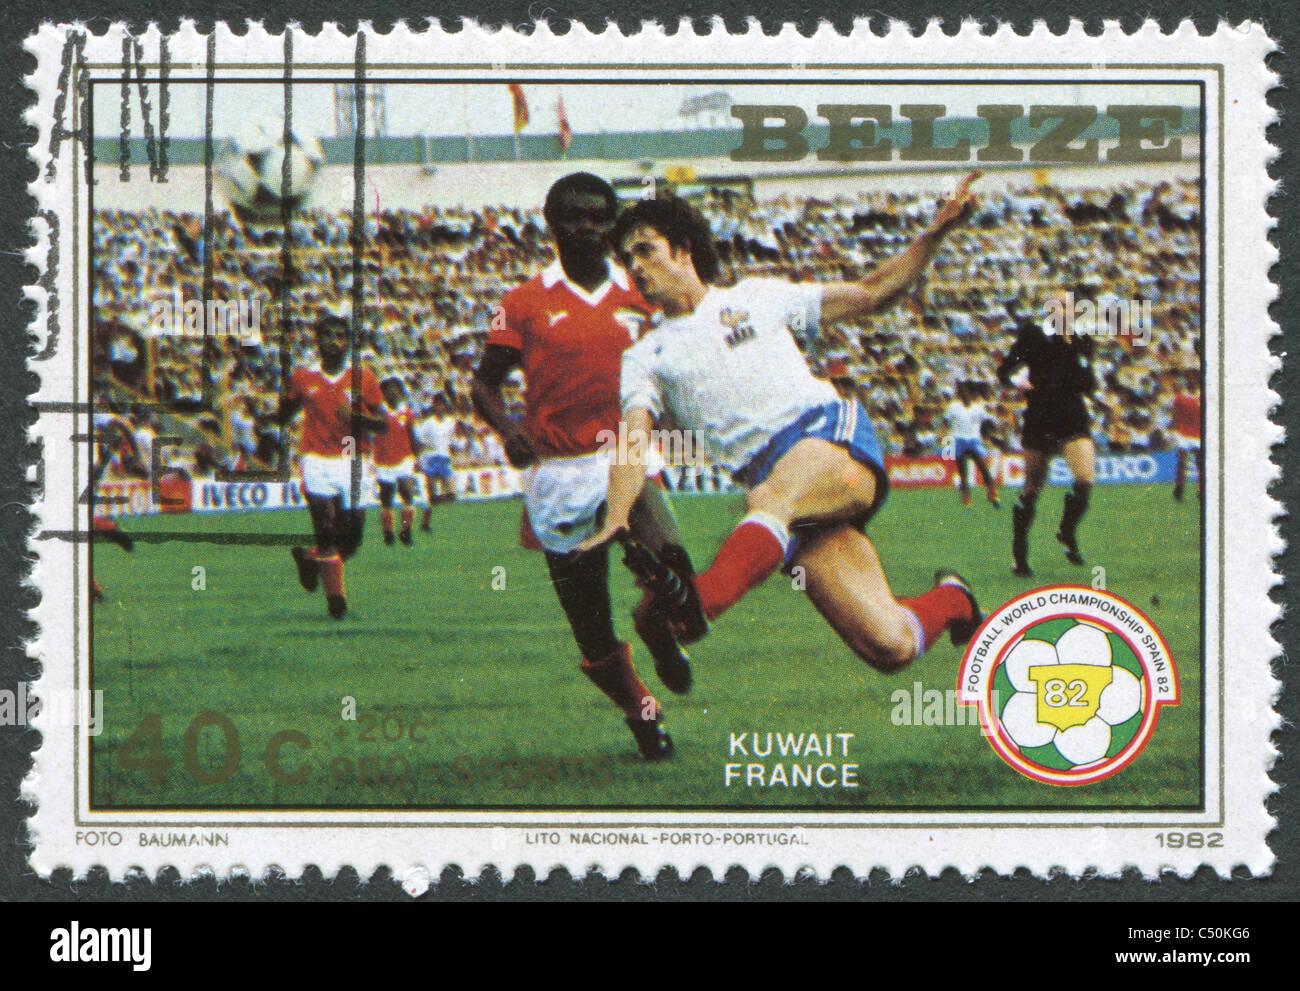 BELIZE 1982: Eine Briefmarke gedruckt in Belize, widmet sich FIFA WM 1982 in Spanien, zeigt ein Match zwischen Kuwait - Frankreich Stockfoto